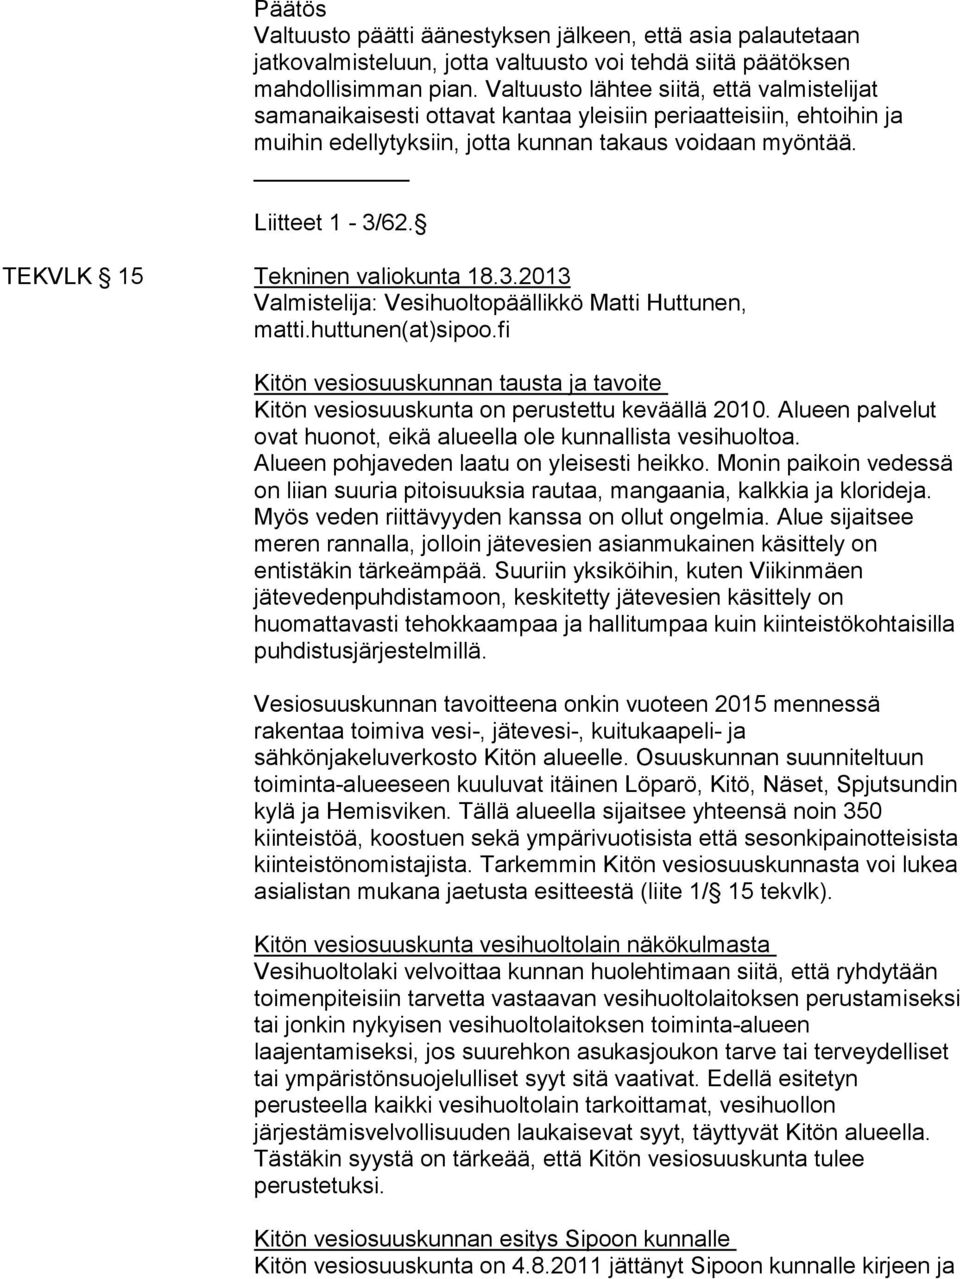 TEKVLK 15 Tekninen valiokunta 18.3.2013 Valmistelija: Vesihuoltopäällikkö Matti Huttunen, matti.huttunen(at)sipoo.